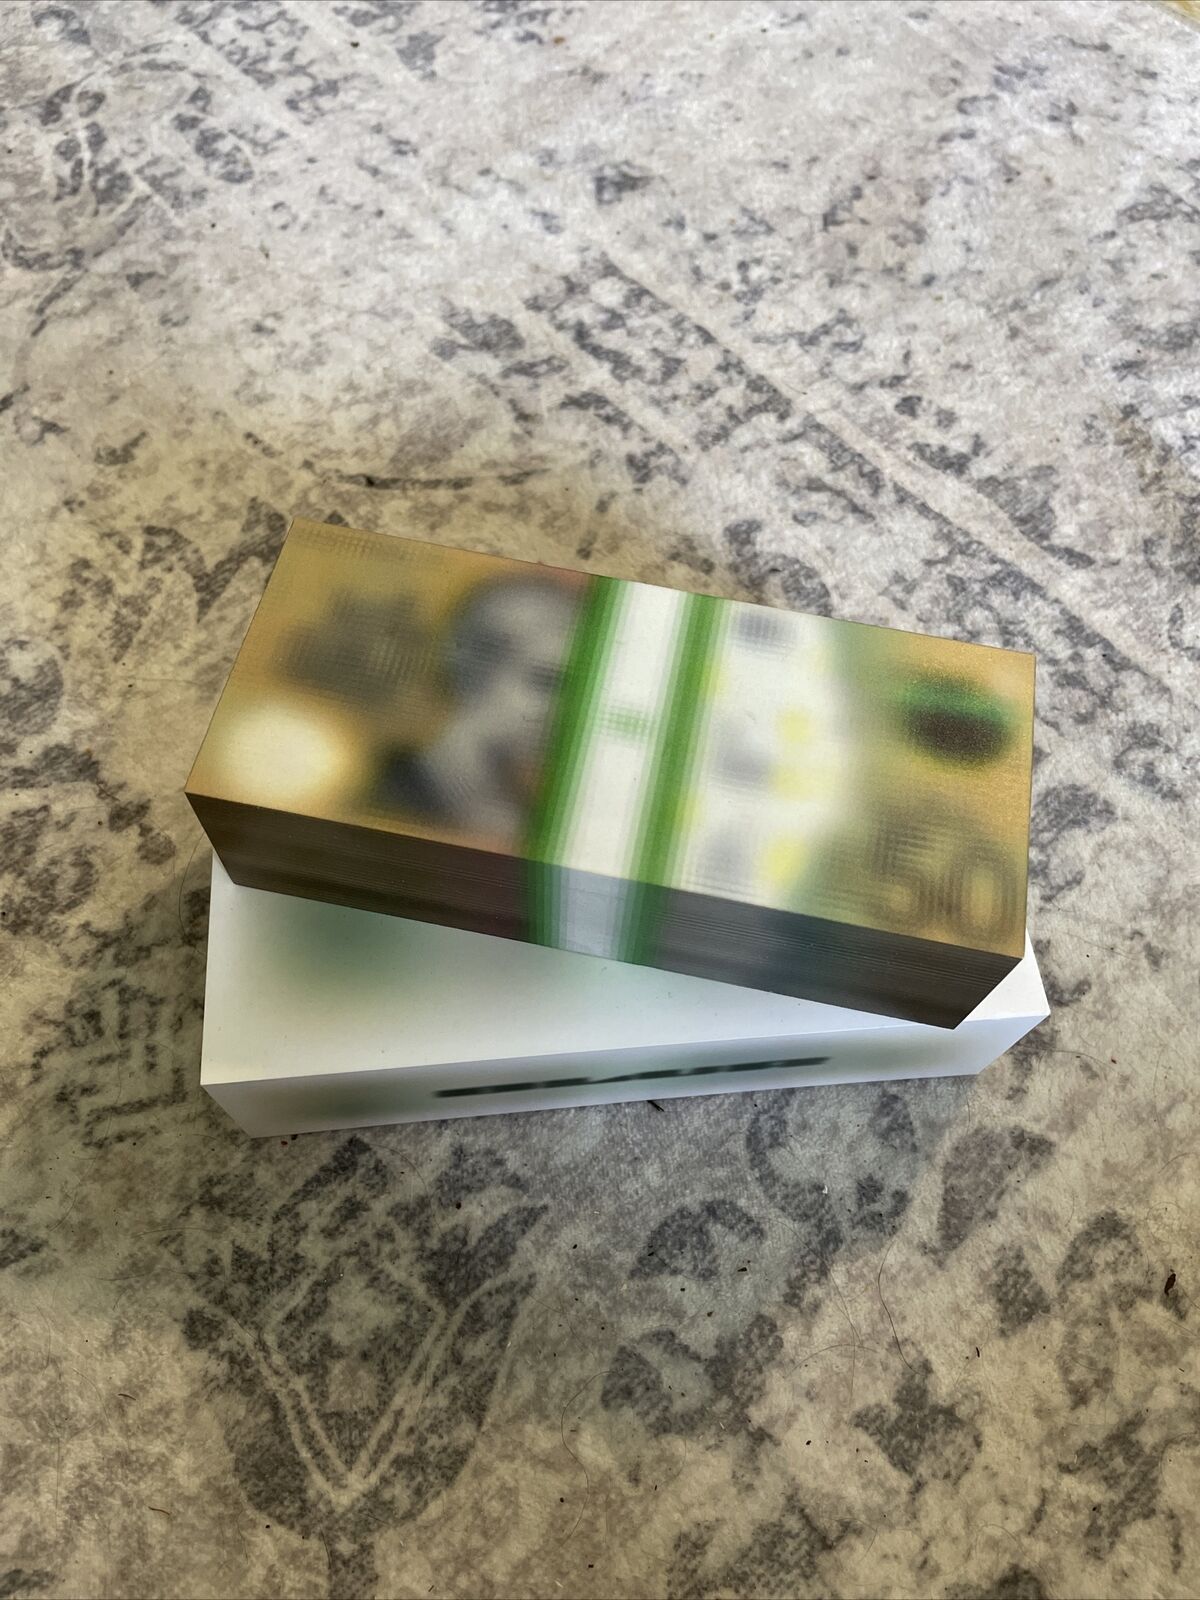 MSCHF Blur A$50 AUD - Australian Money Art Figure Drop #78 CONFIRMED IN-HAND